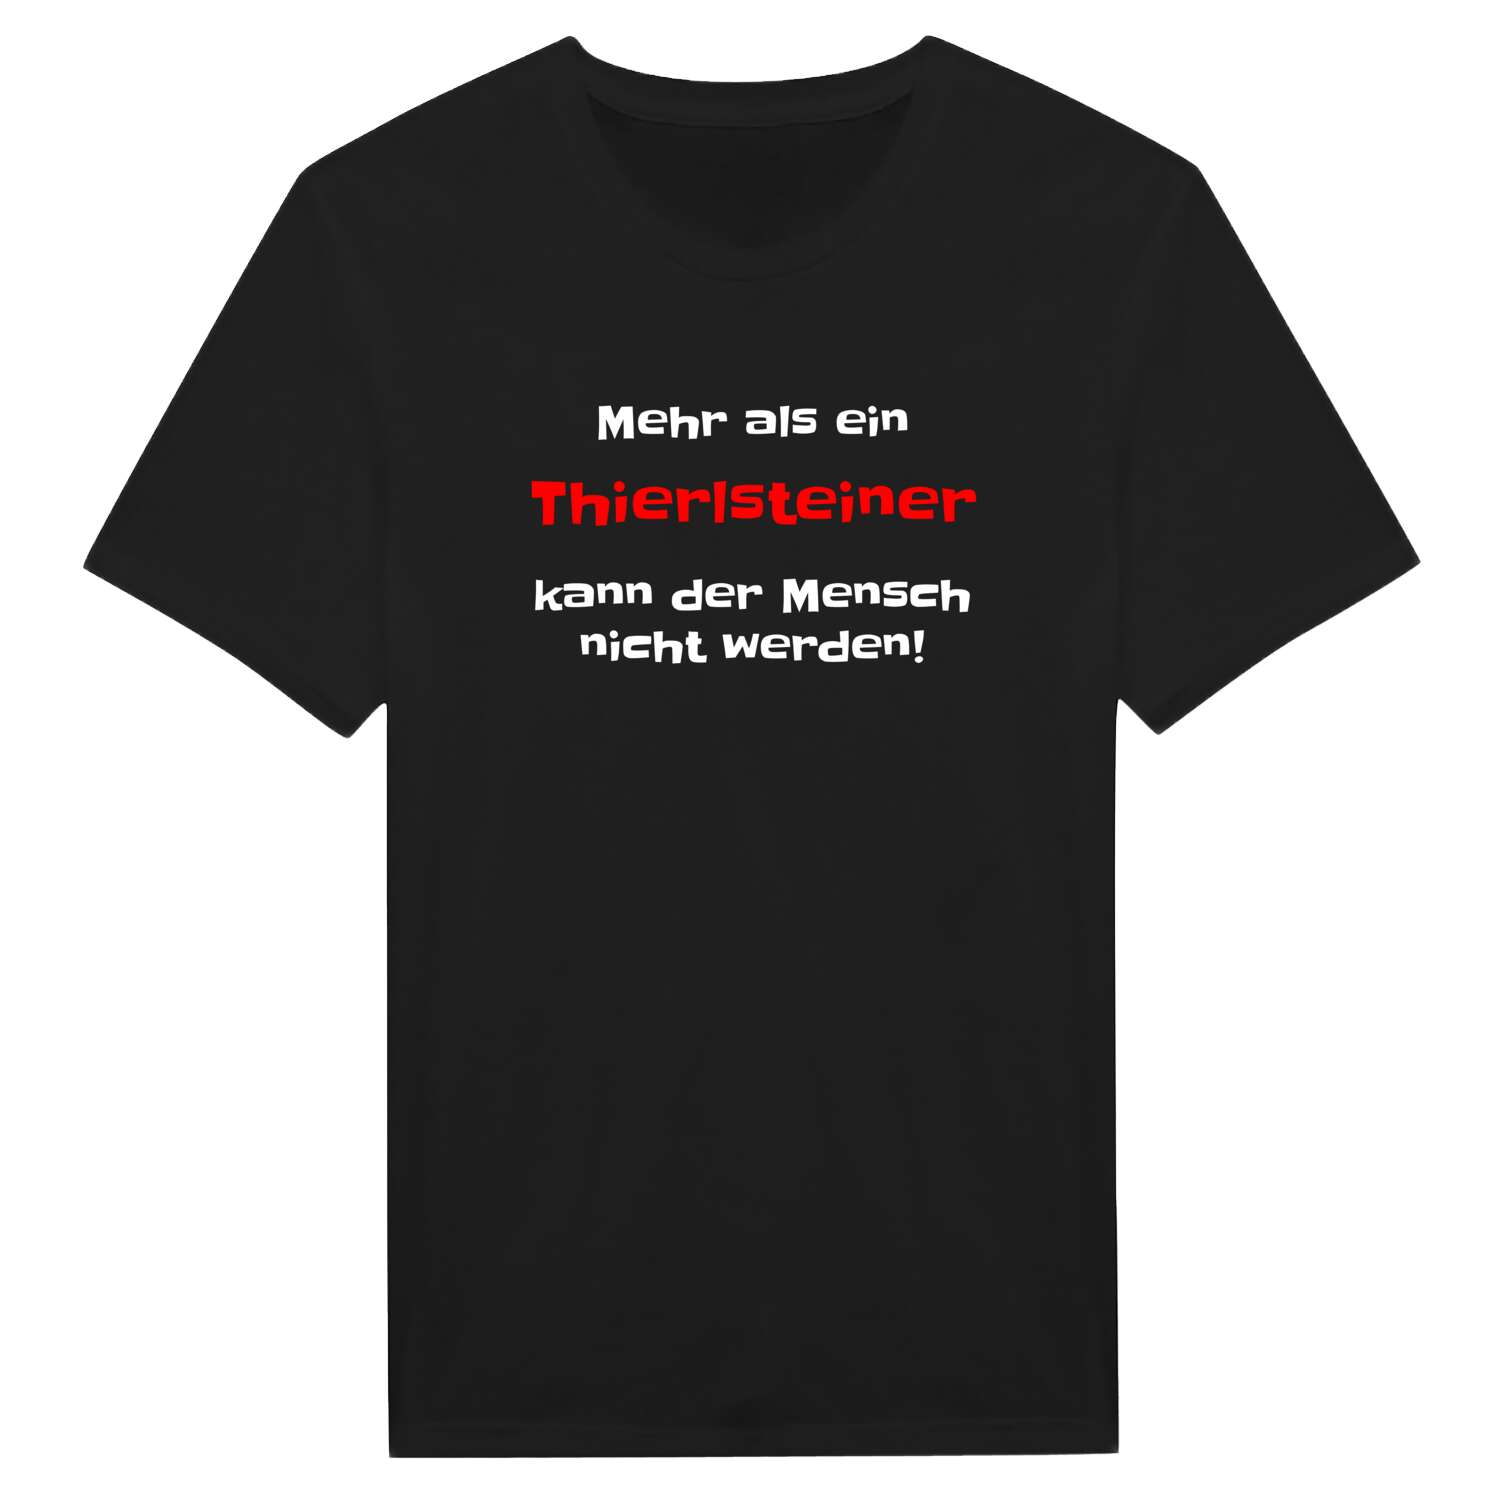 Thierlstein T-Shirt »Mehr als ein«